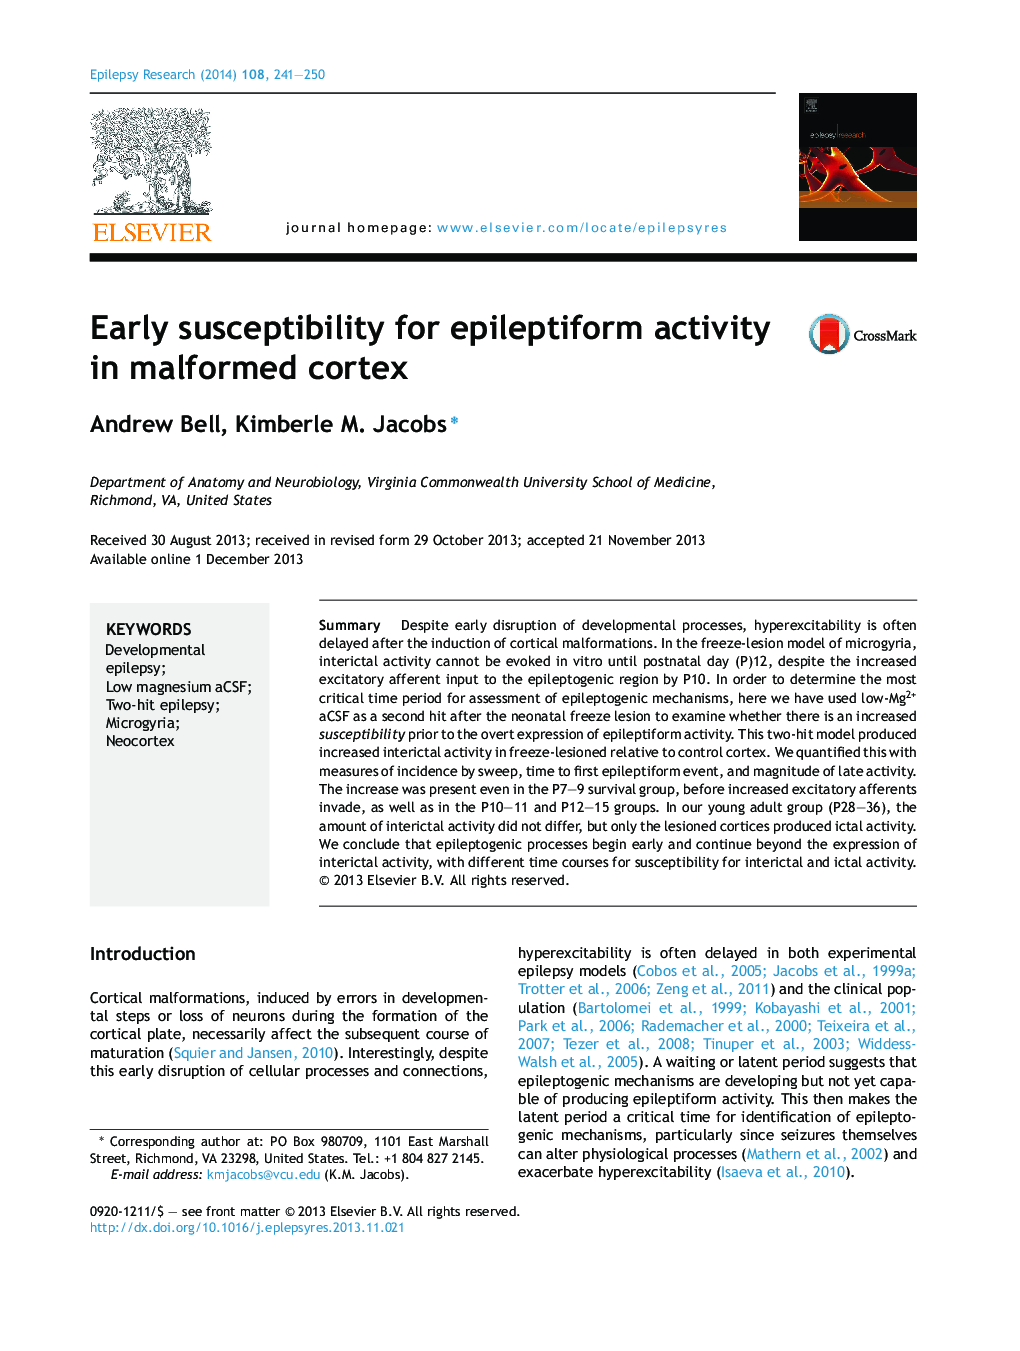 حساسیت اولیه برای فعالیت اپیلتیمتریک در کورتکس ناقص 